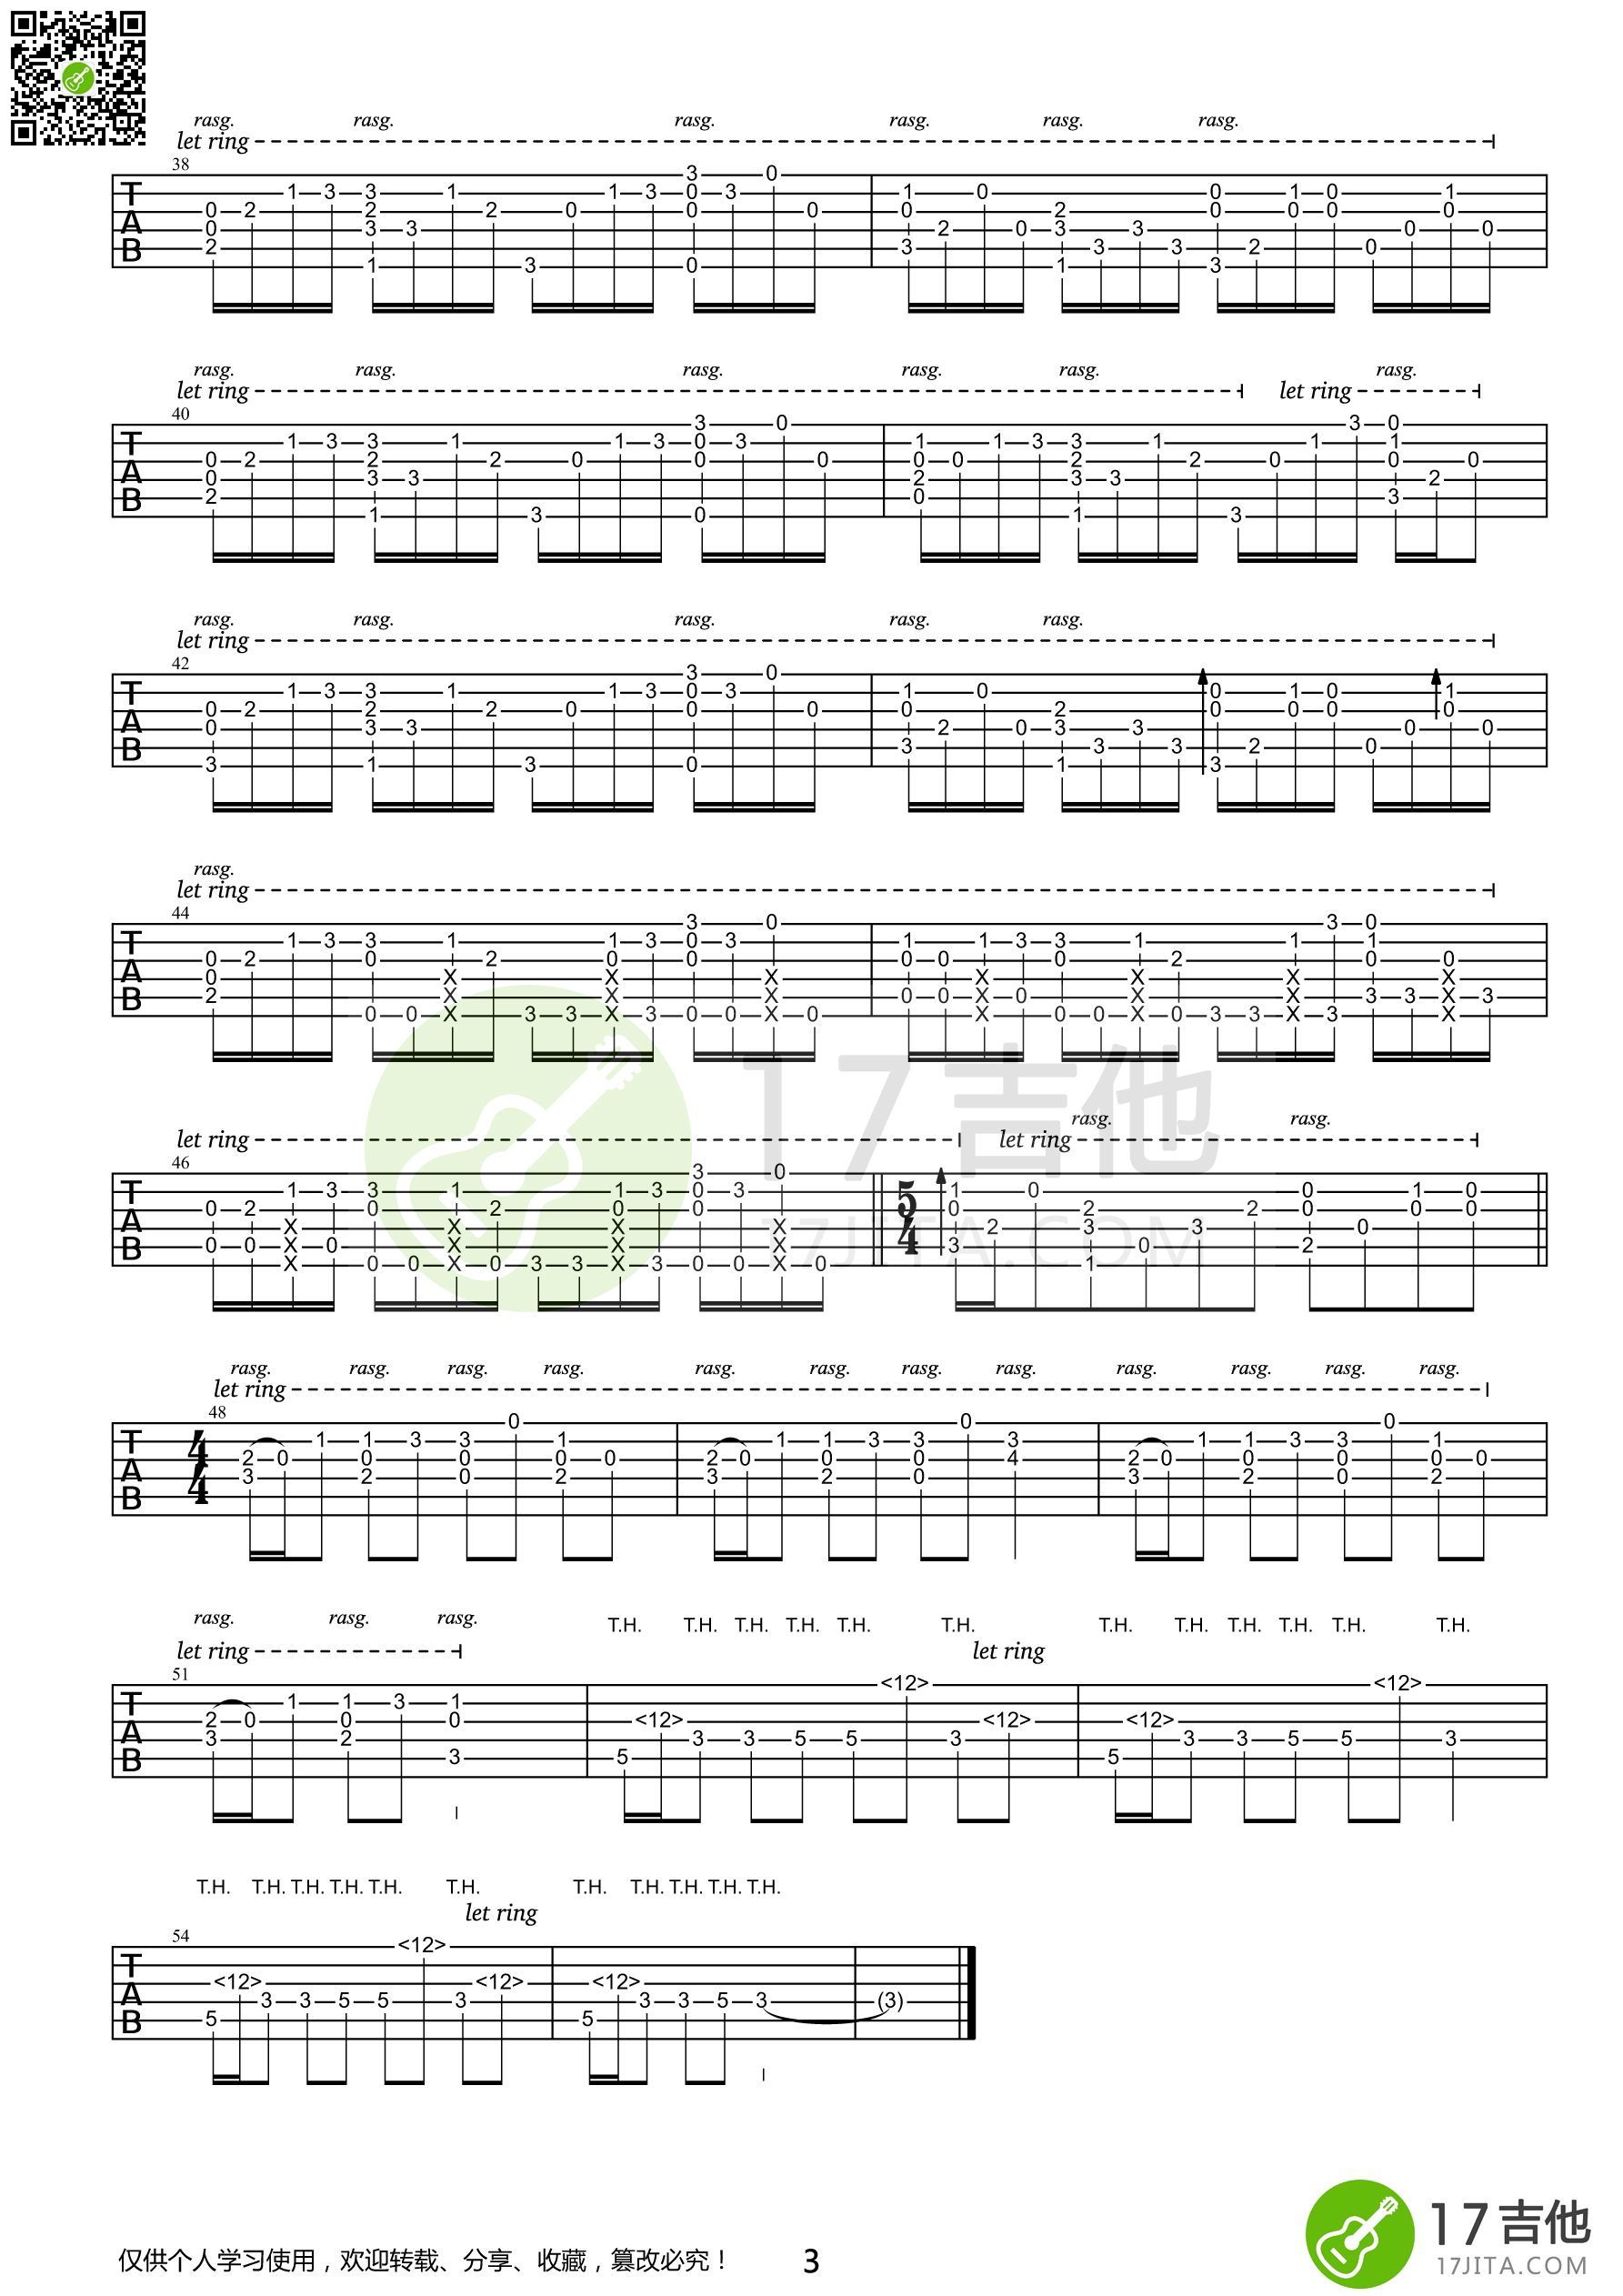 Clannad - 团子大家族吉他谱(gtp谱,尤克里里,独奏)_动漫游戏(ACG)